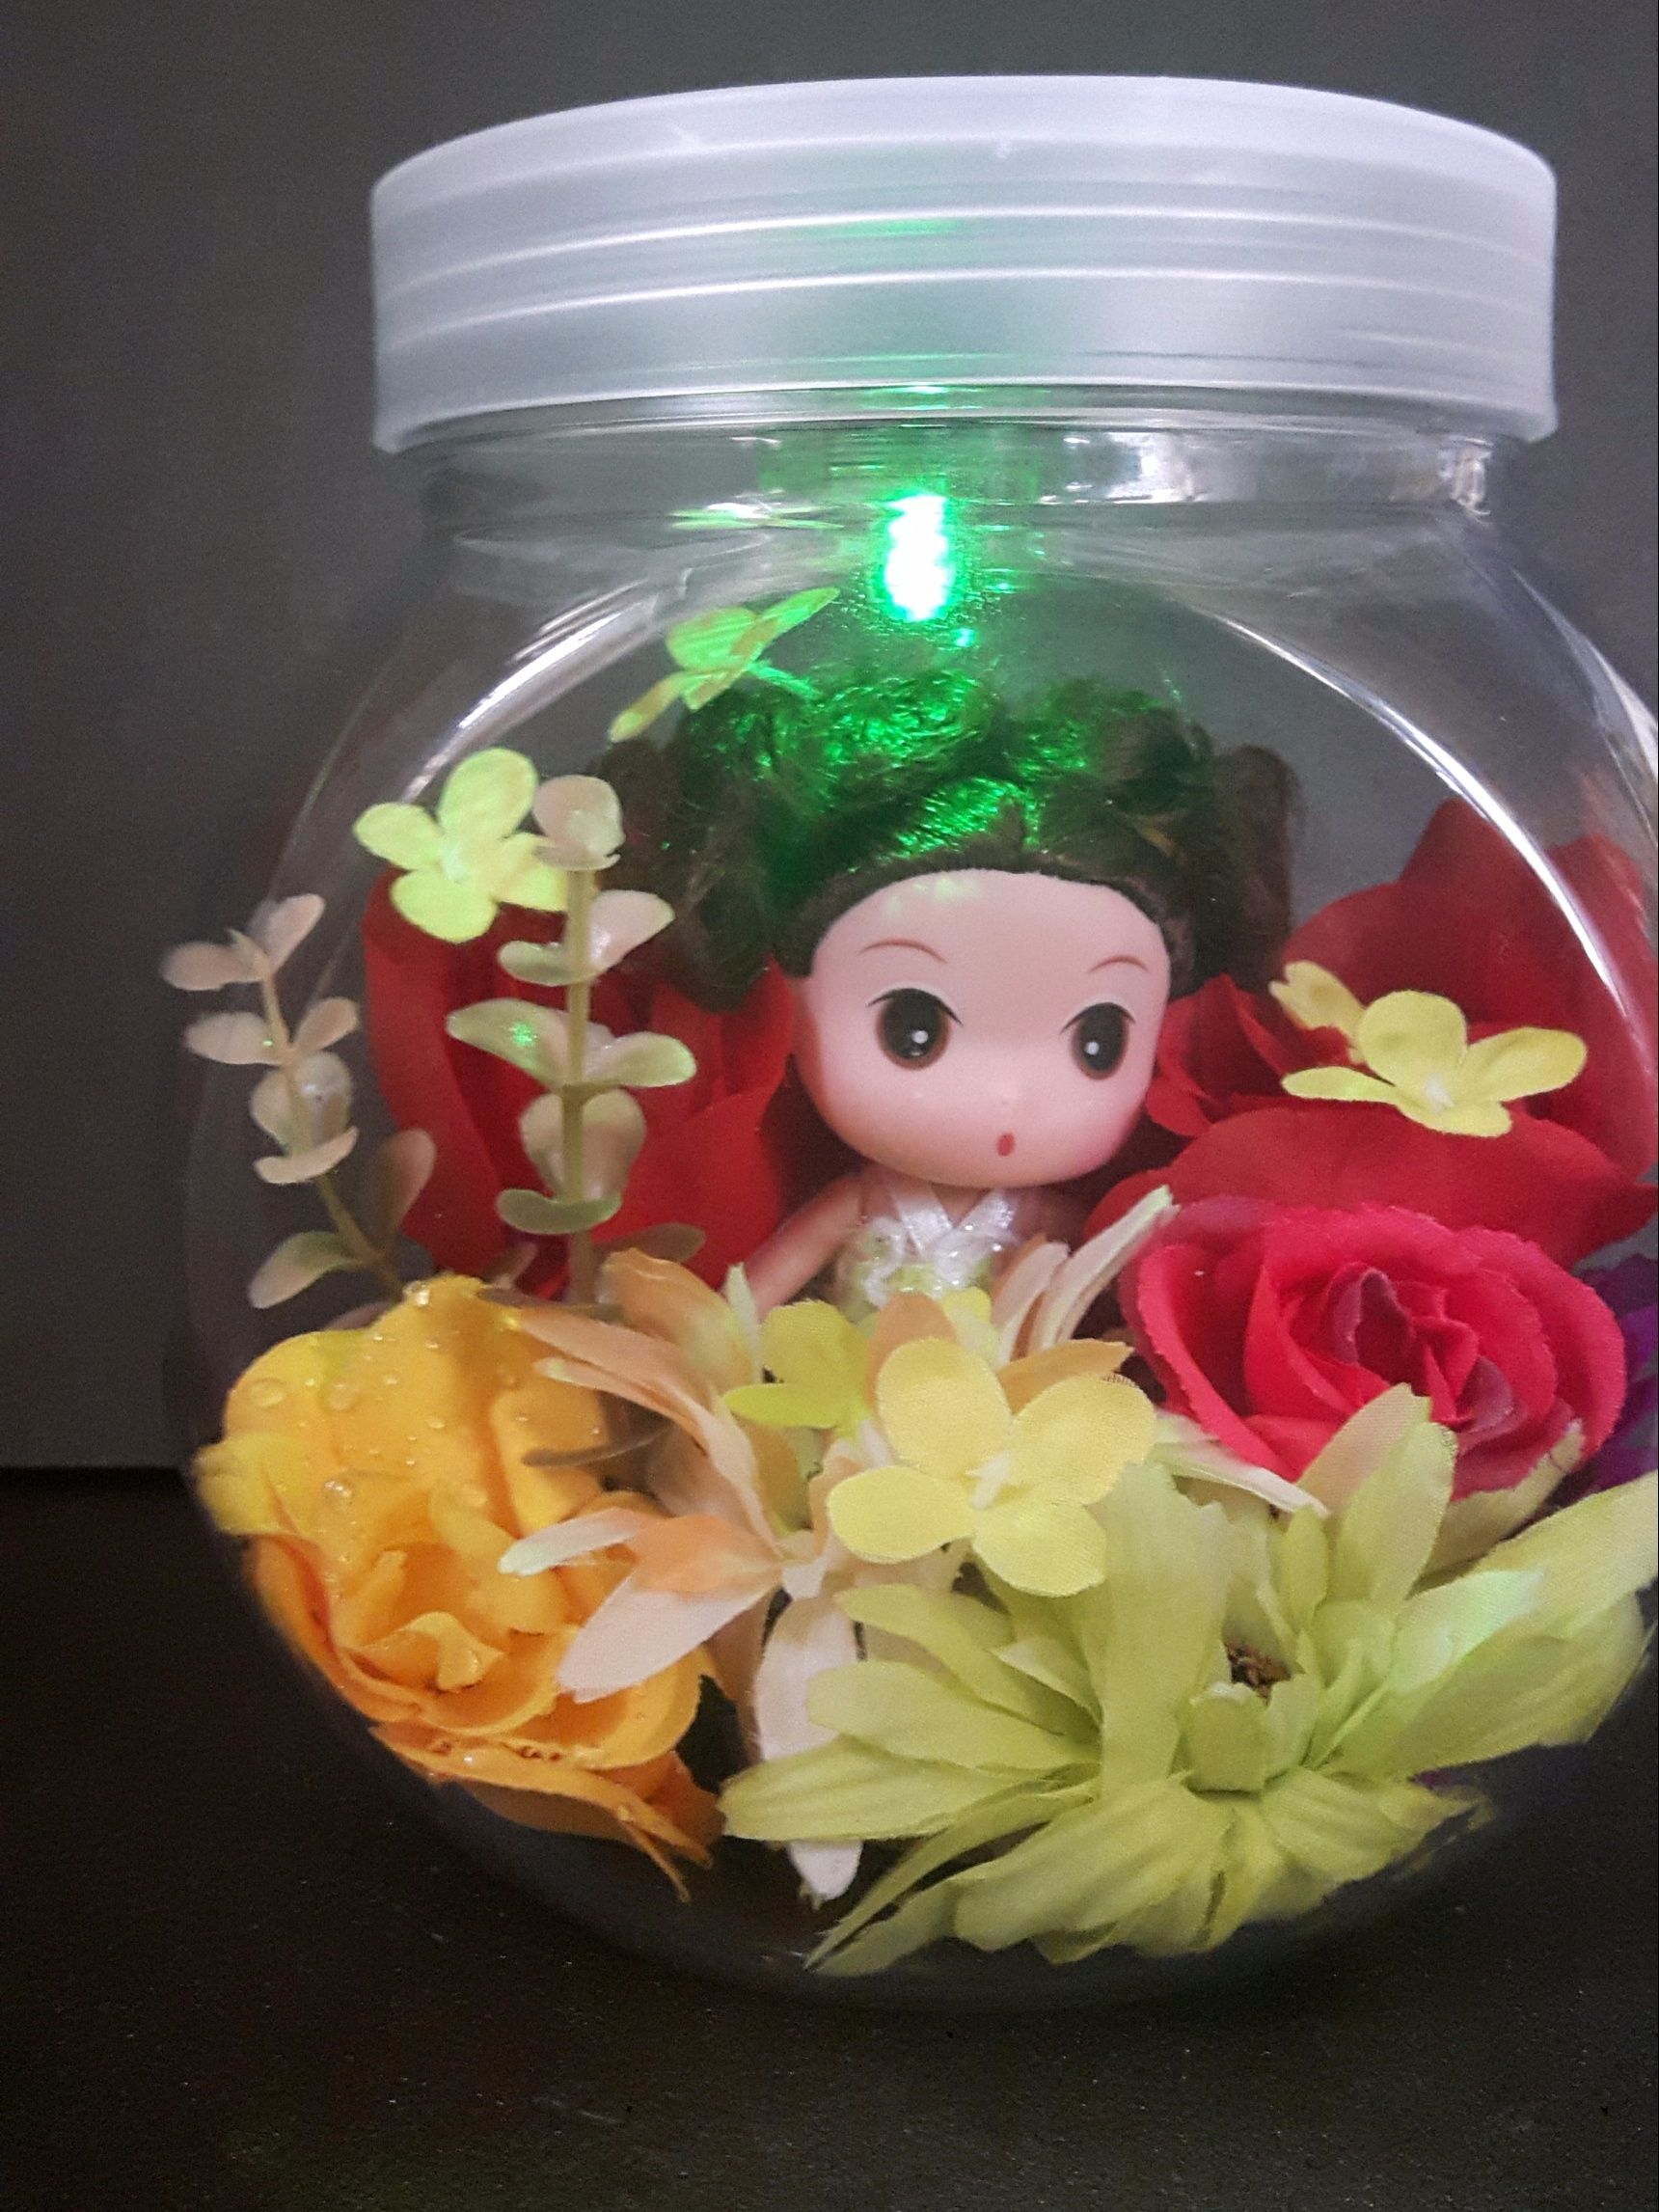 100均のキャンディーポットを使ってお花の中のおやゆび姫を作りました。